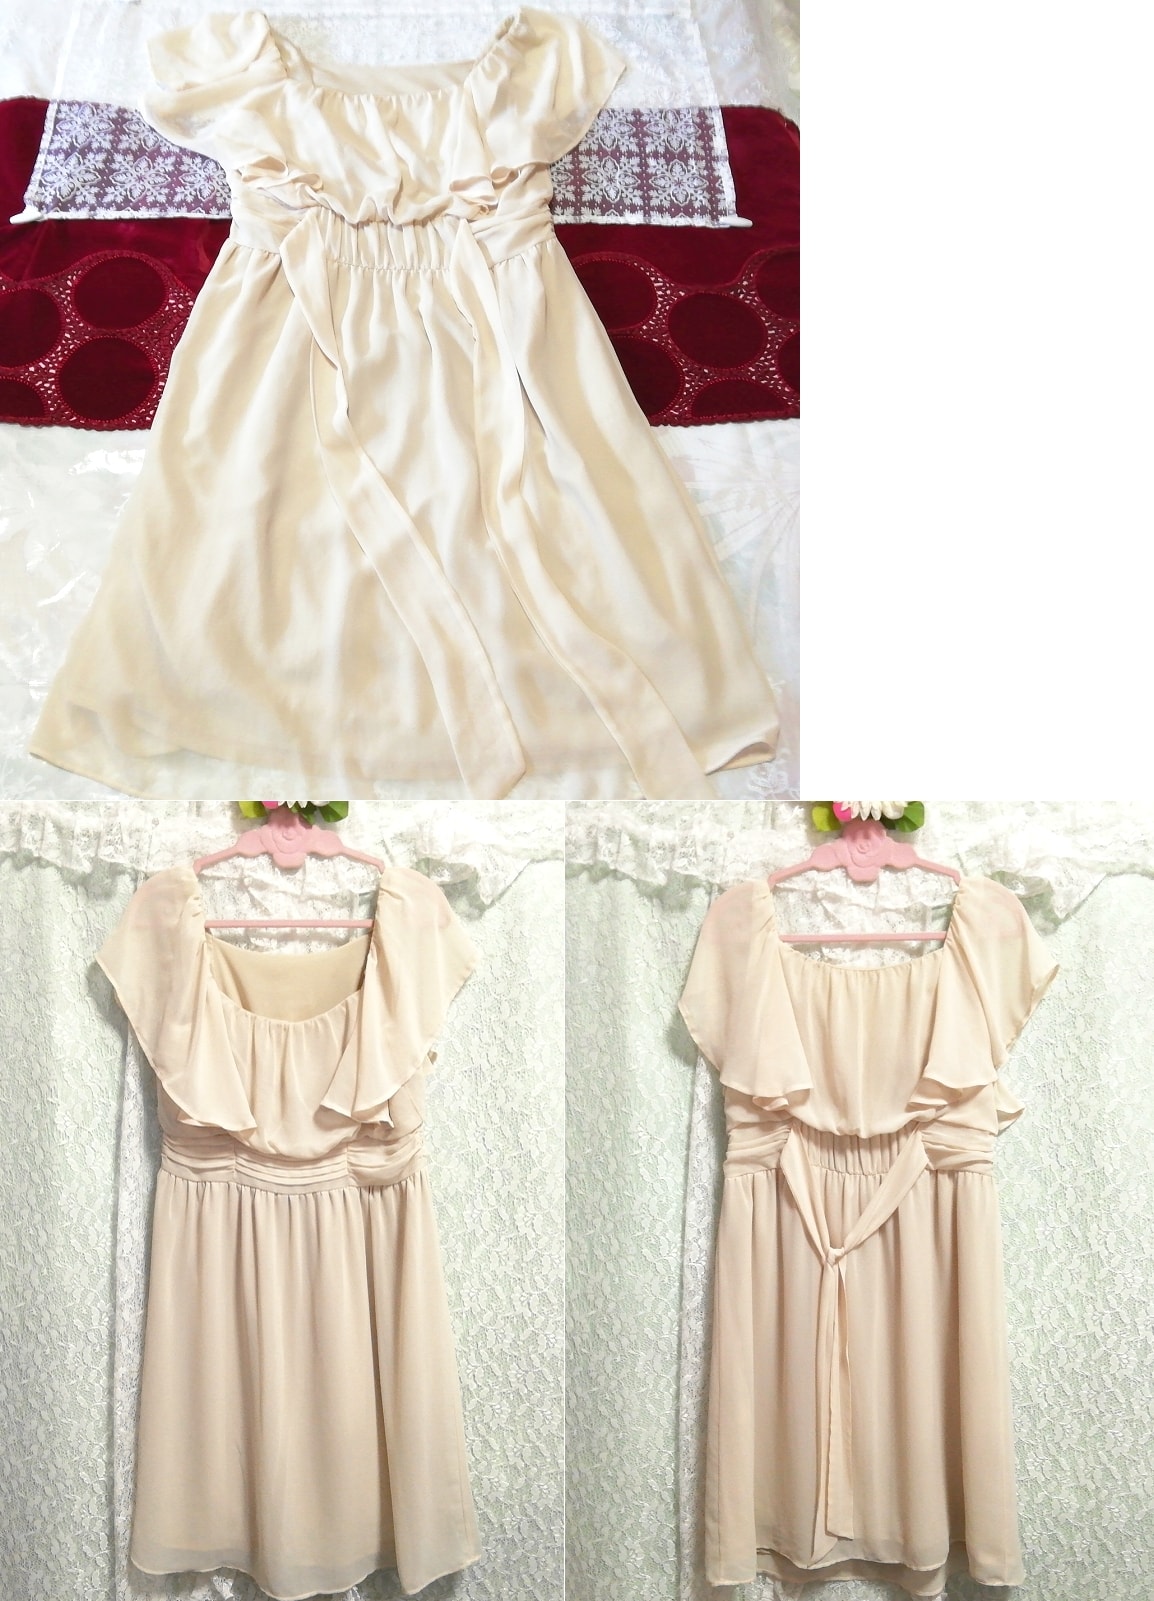 Flaxen ivory chiffon sleeveless tunic negligee nightgown nightwear dress, tunic, sleeveless, sleeveless, m size